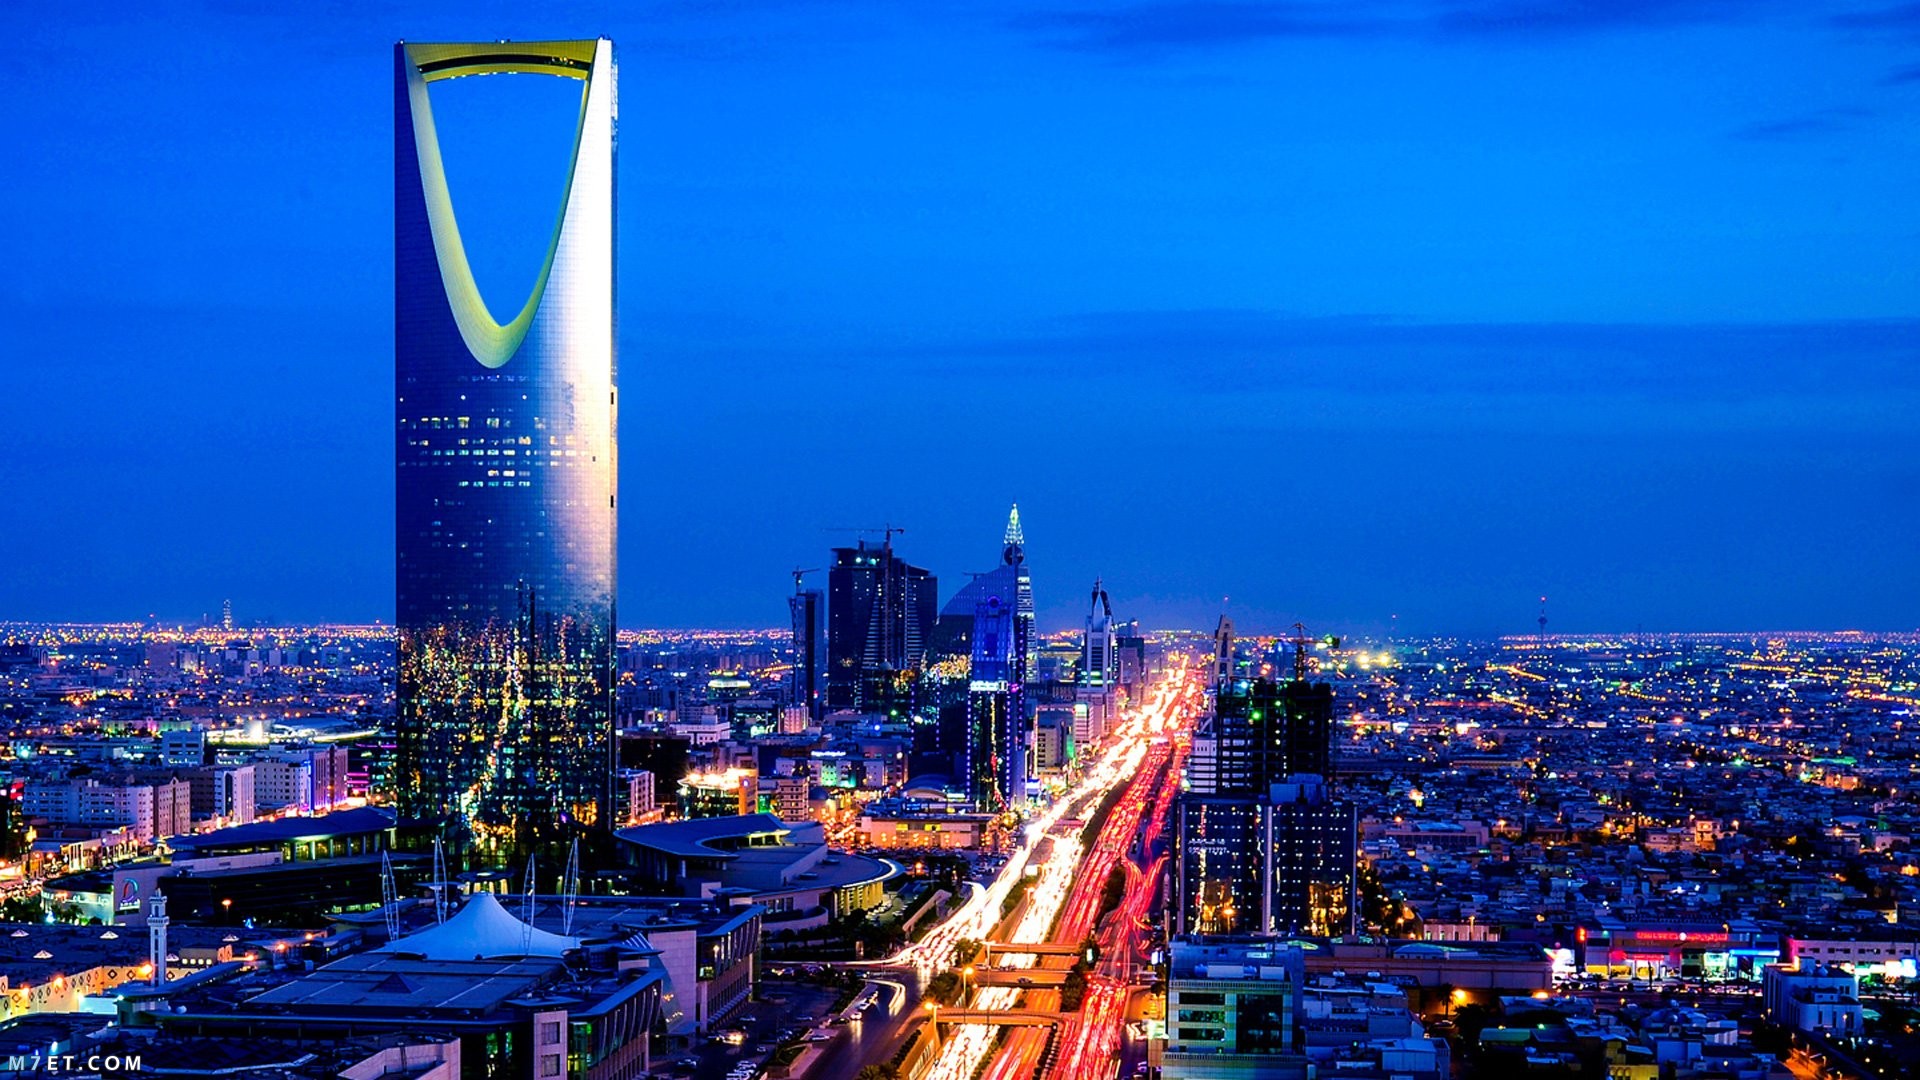 أهم الأماكن السياحية في الرياض